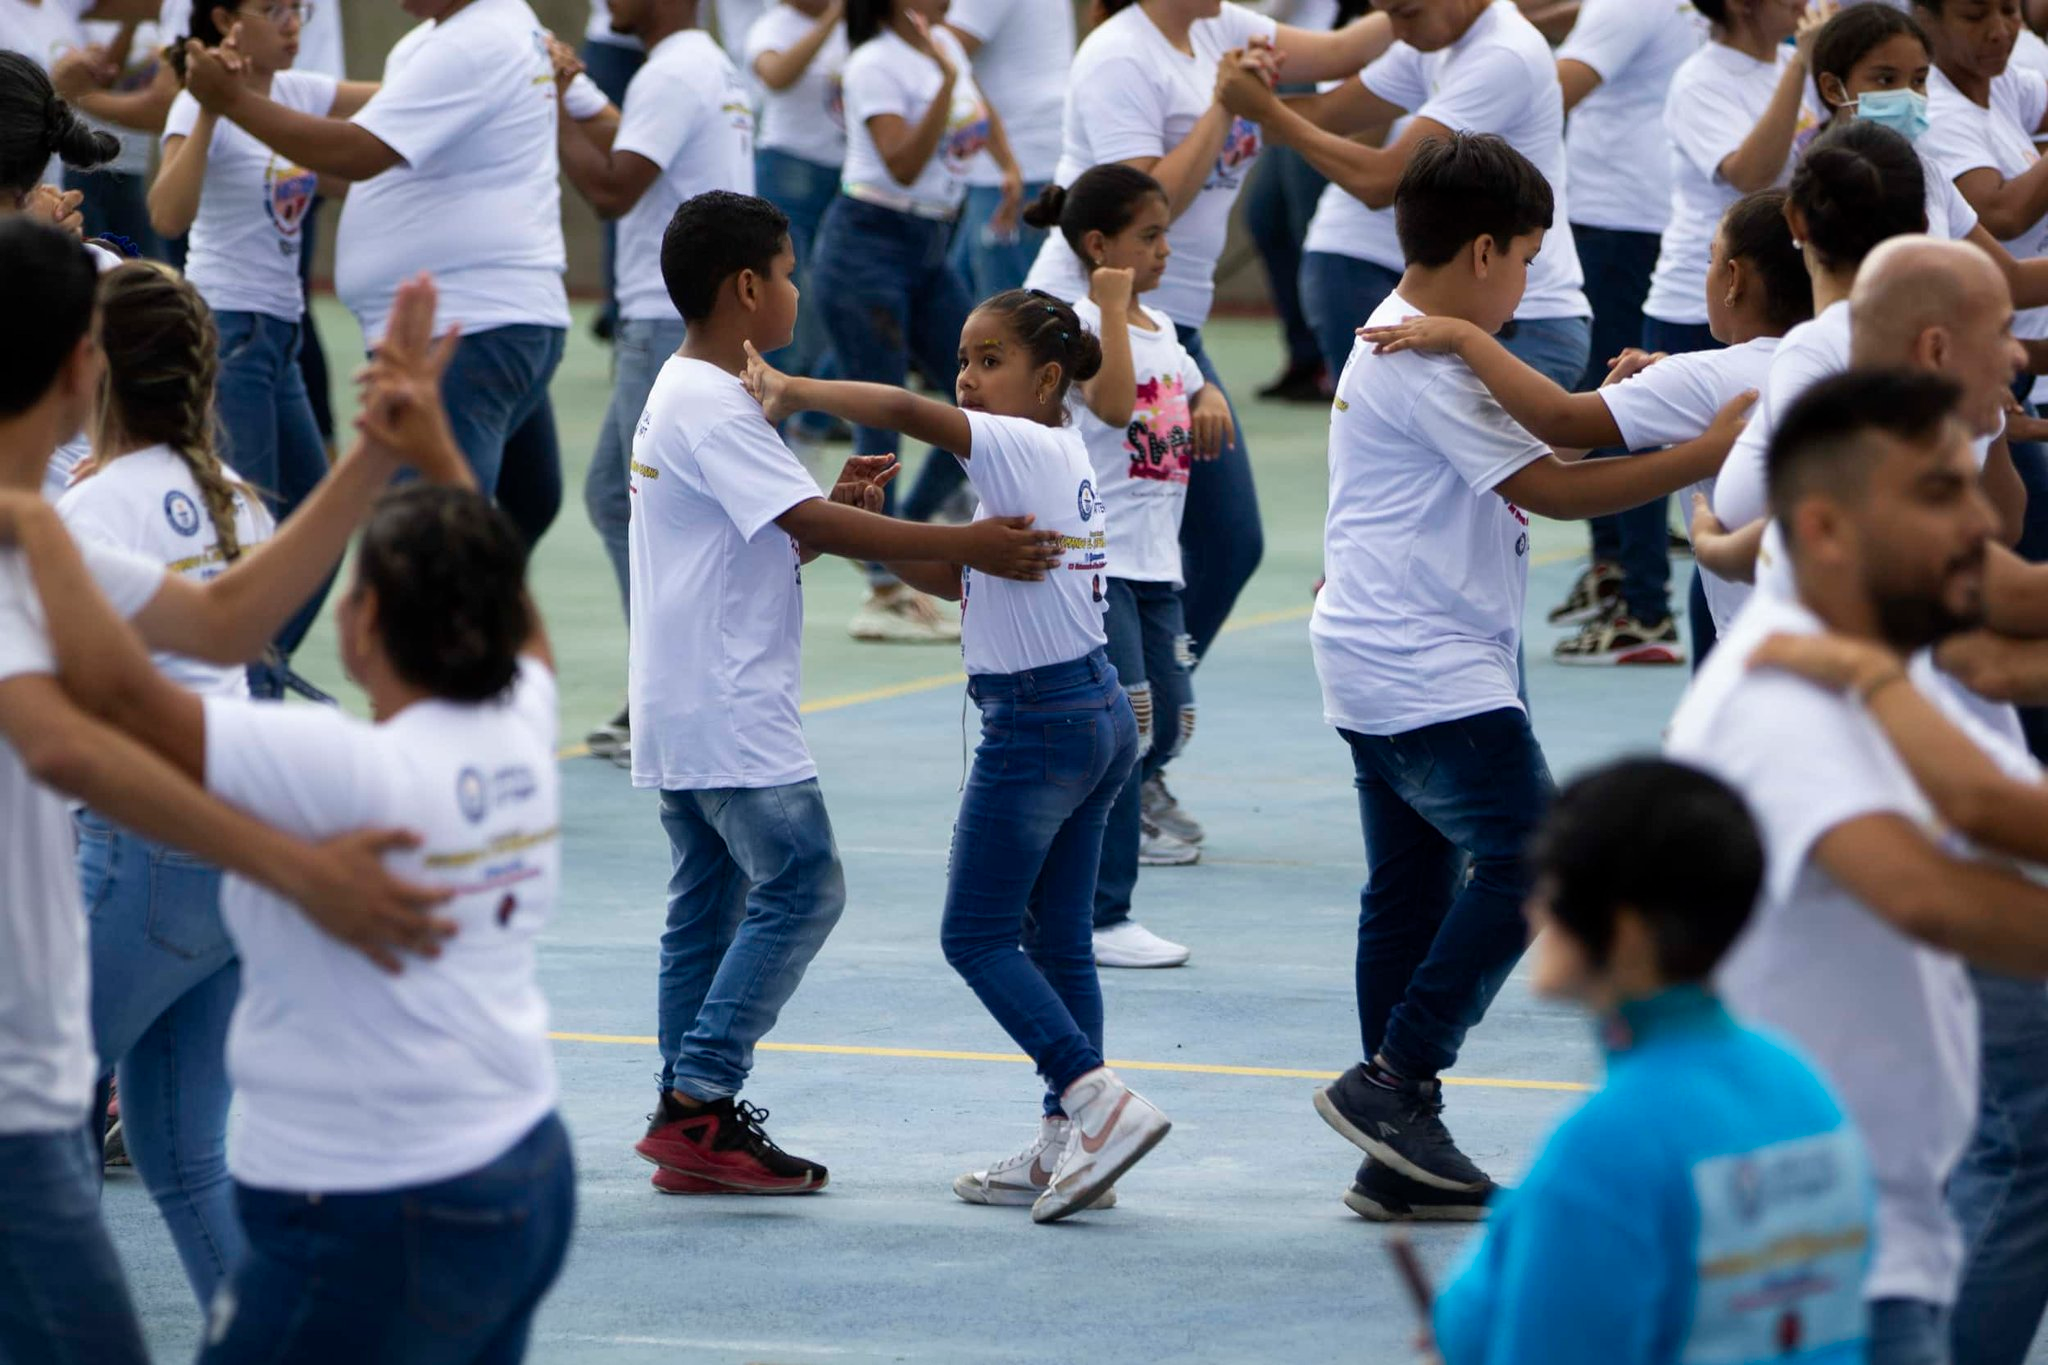 Presidente de Cuba felicita a bailadores por batir récord mundial (+ Post)